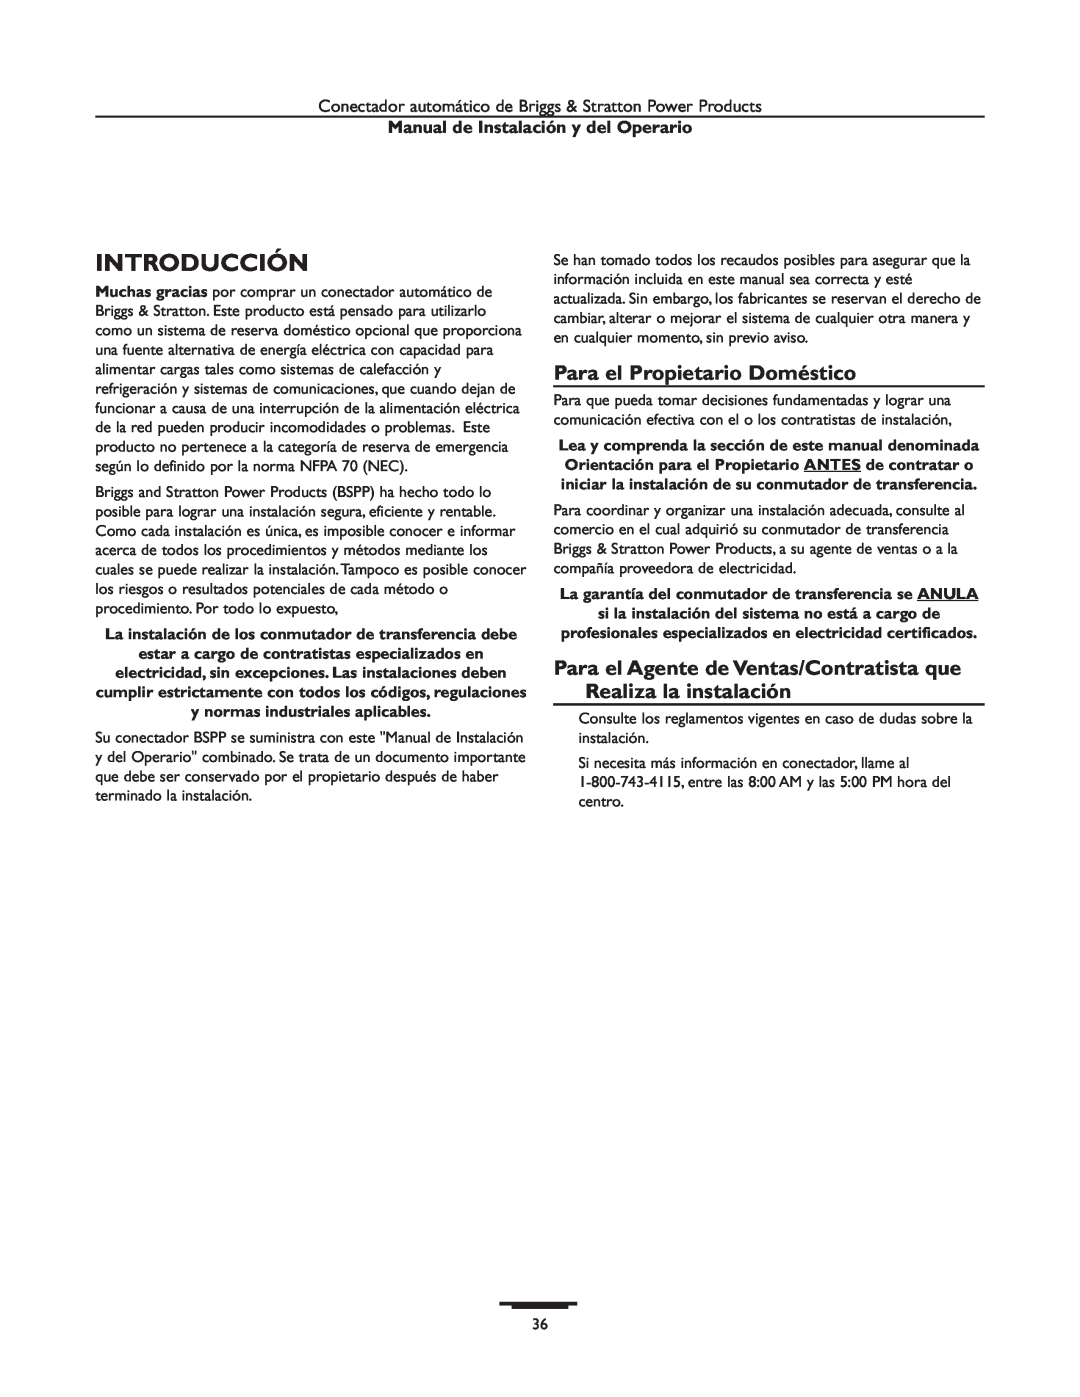 Briggs & Stratton 01928-1, 01814-1 manual Introducción, Para el Propietario Doméstico, Manual de Instalación y del Operario 